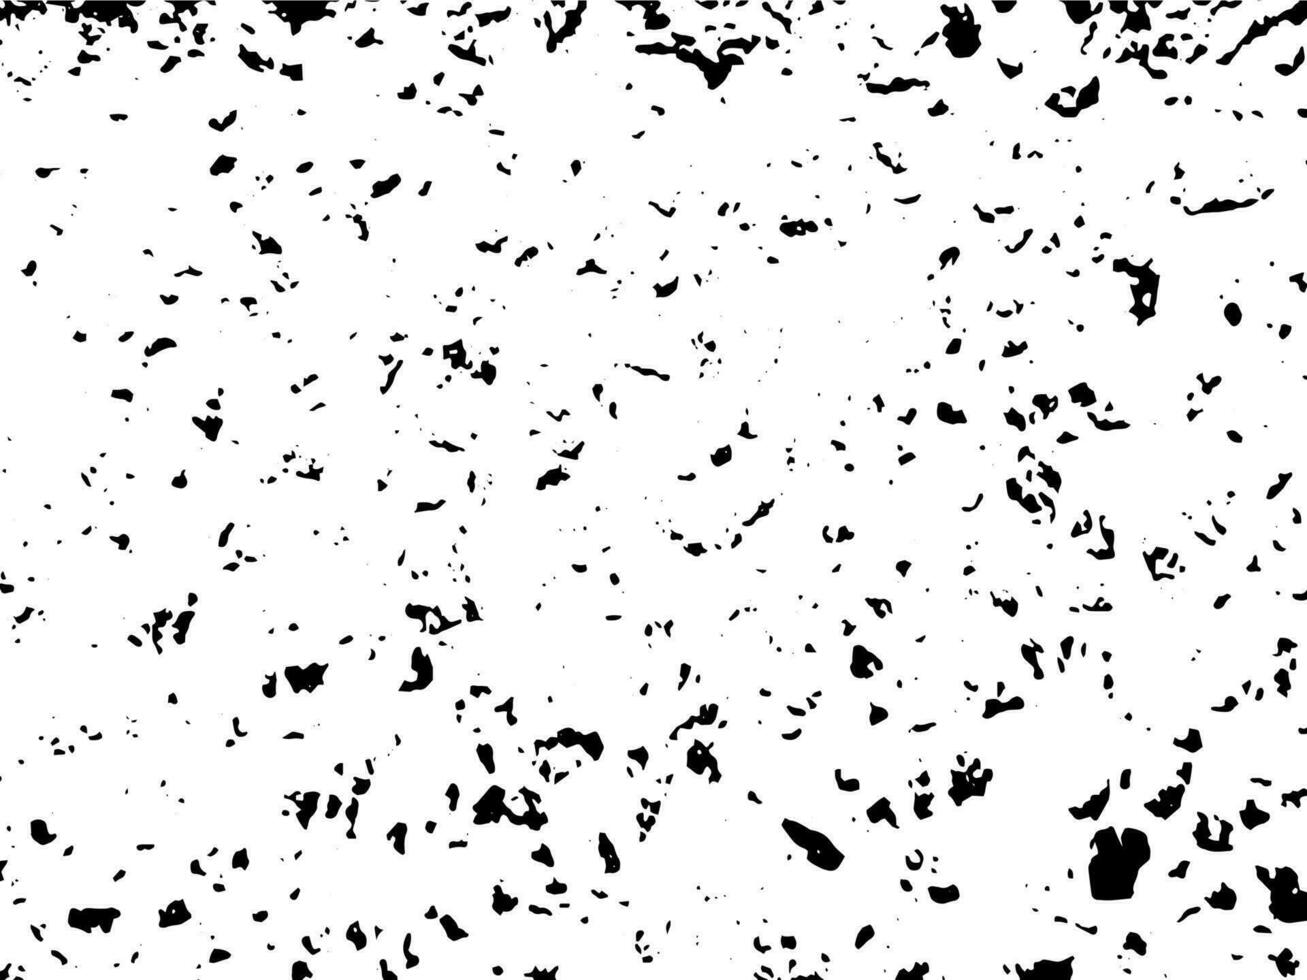 grunge kornig smutsig textur. abstrakt urban ångest täcka över bakgrund. vektor illustration